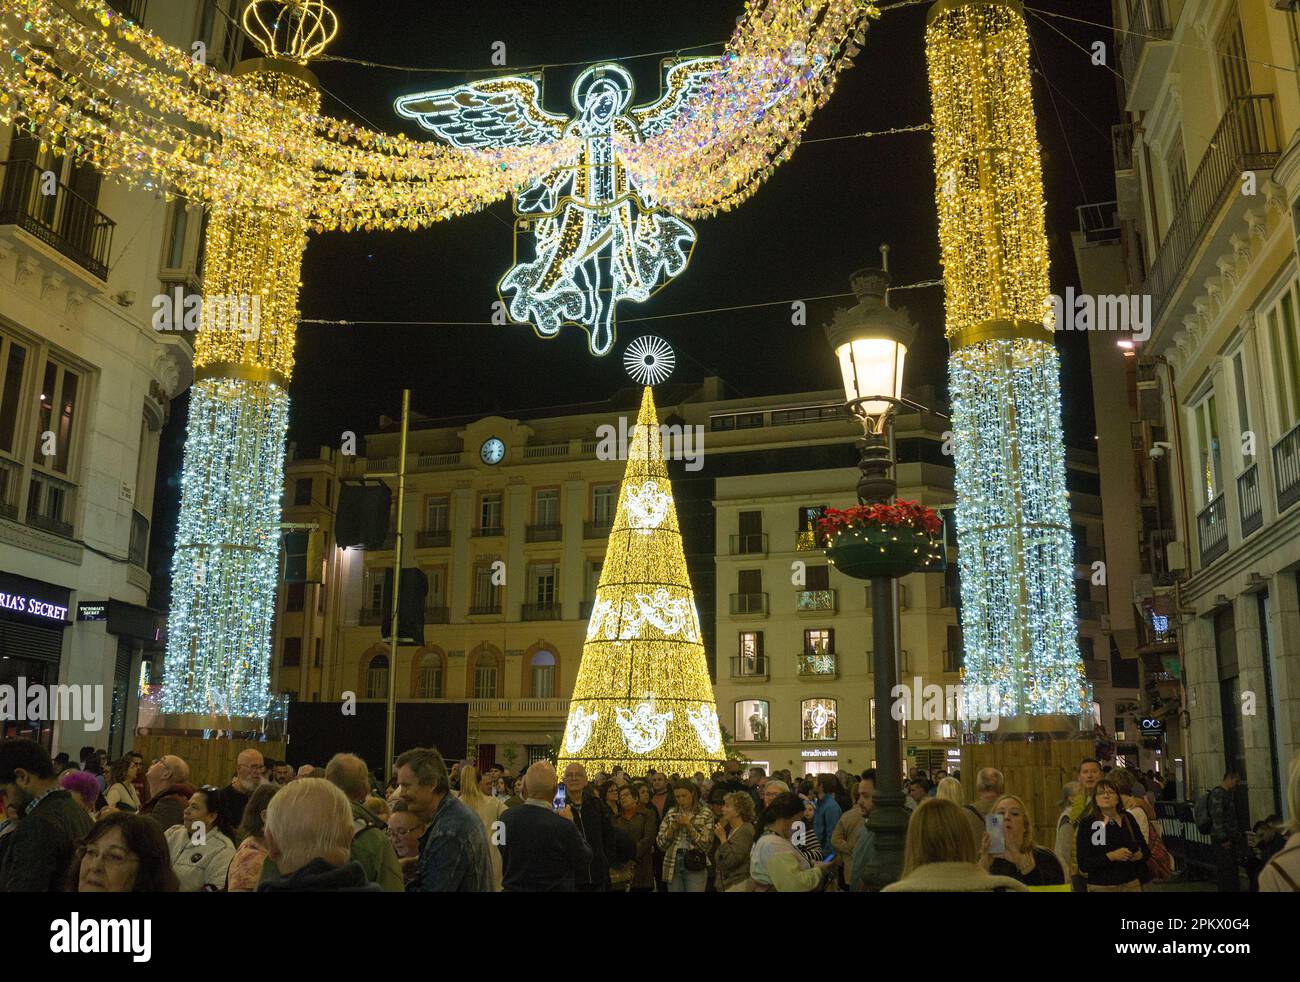 Illuminations de Noël sur la Plaza de la Constitucionine, à côté de la Calle marques de Larios, Malaga, Andalousie, Costa del sol, Espagne, Europe Banque D'Images